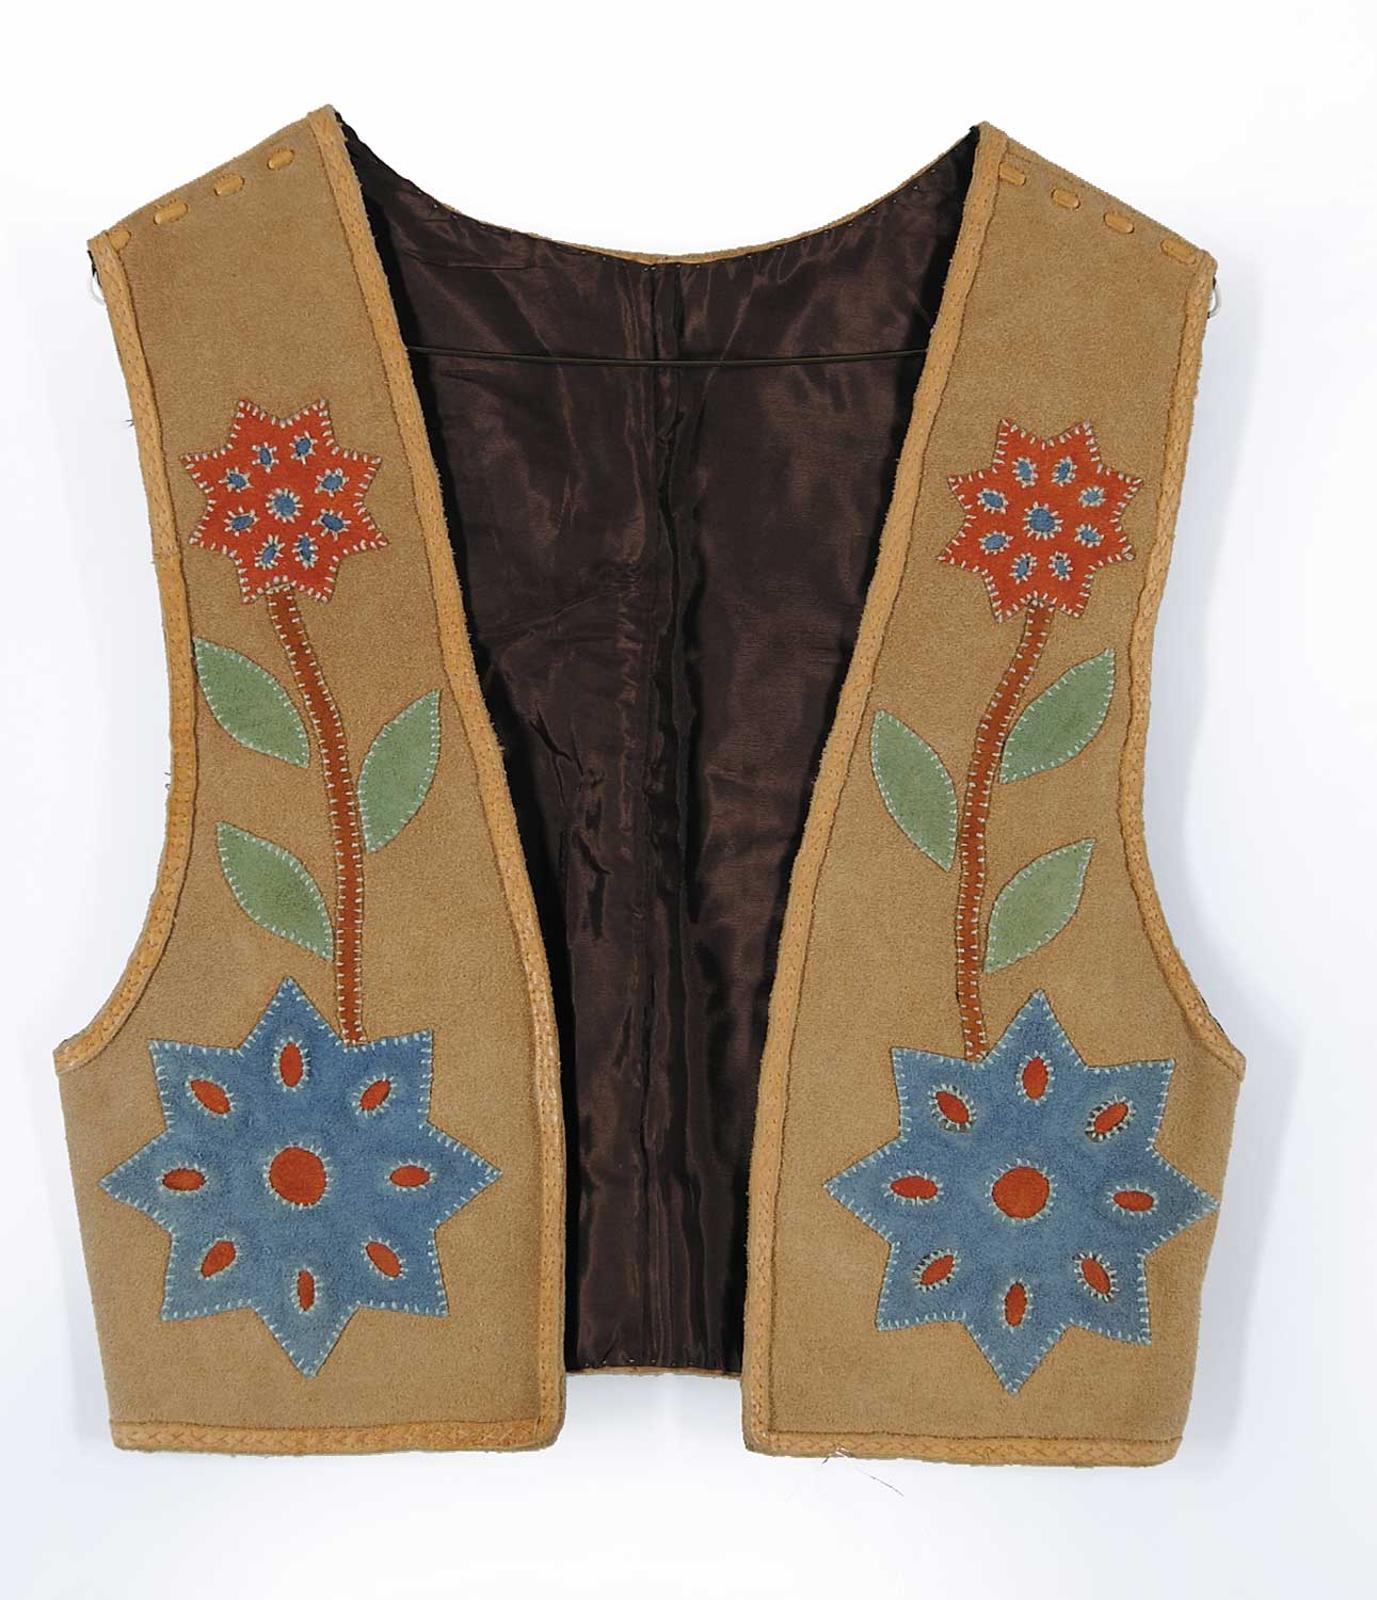 Robert Charles Aller (1922-2008) - Untitled - Moose Hide Vest with Appliqued Flowers